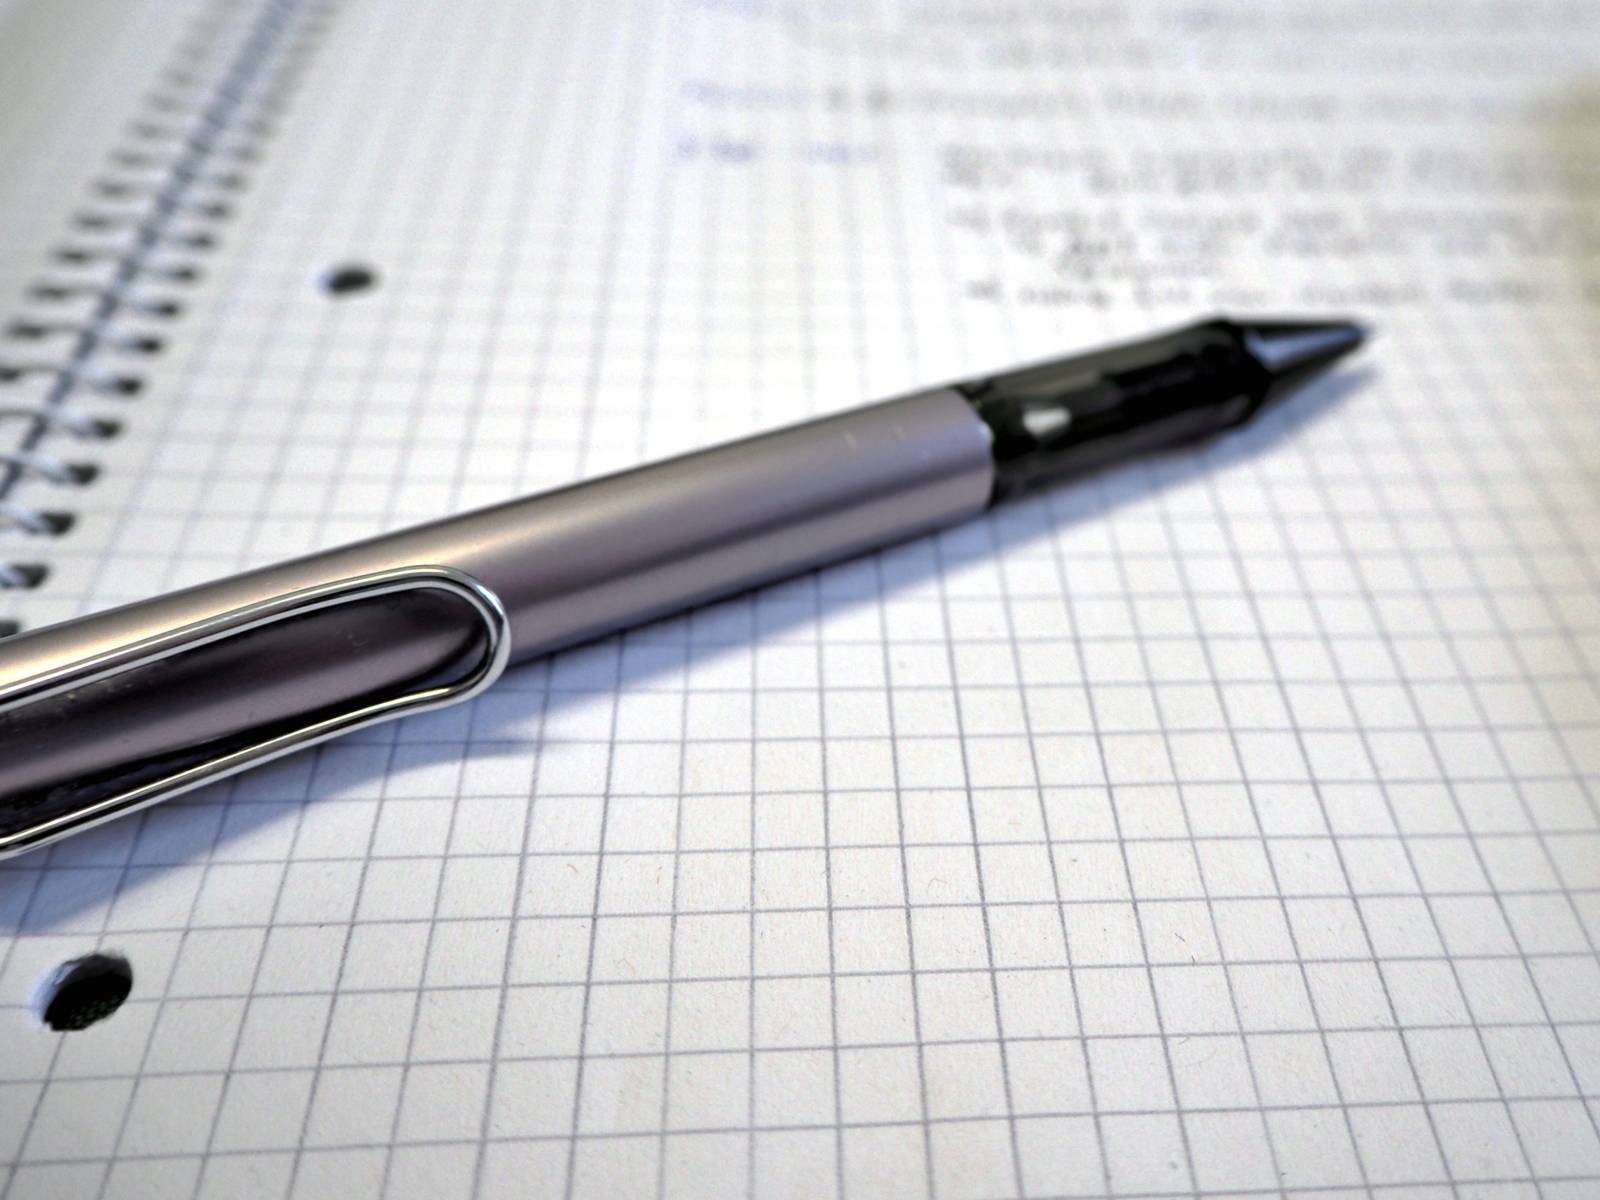 Ein Kugelschreiber liegt auf einem Schreibblock mit kariertem Papier. Handschriftliche Notizen stehen auf dem Papier.